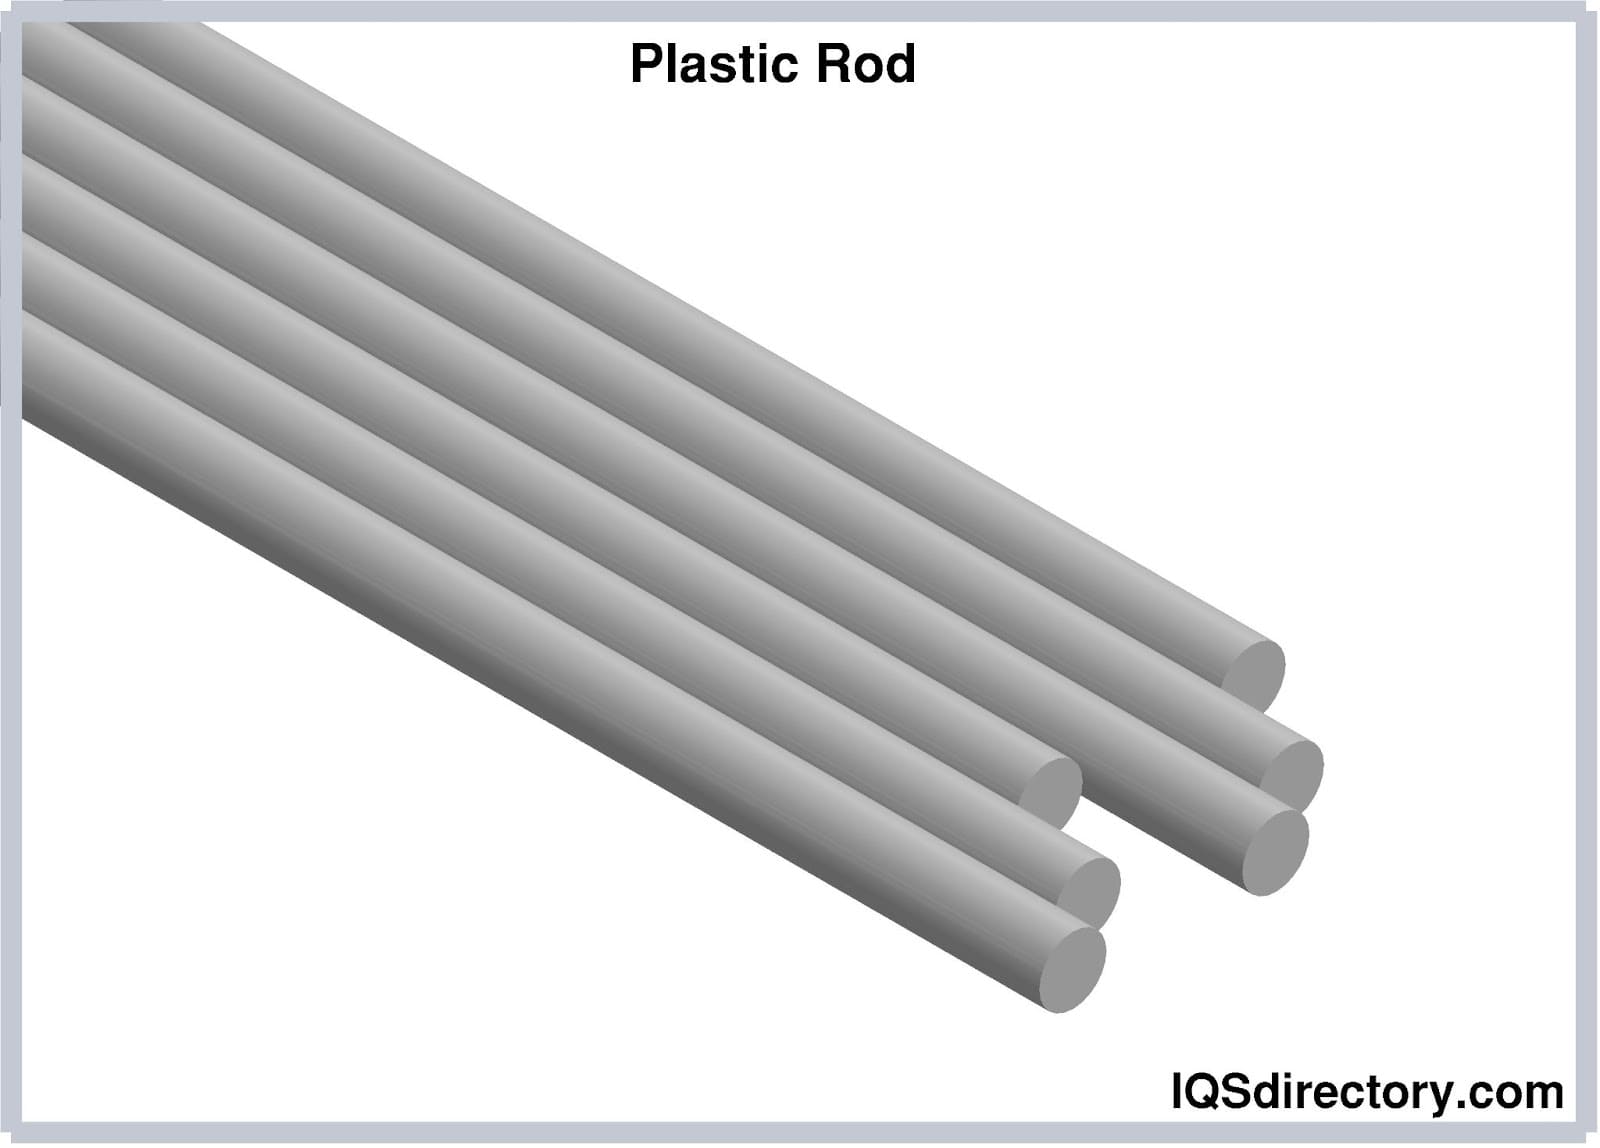 Plastic Rods